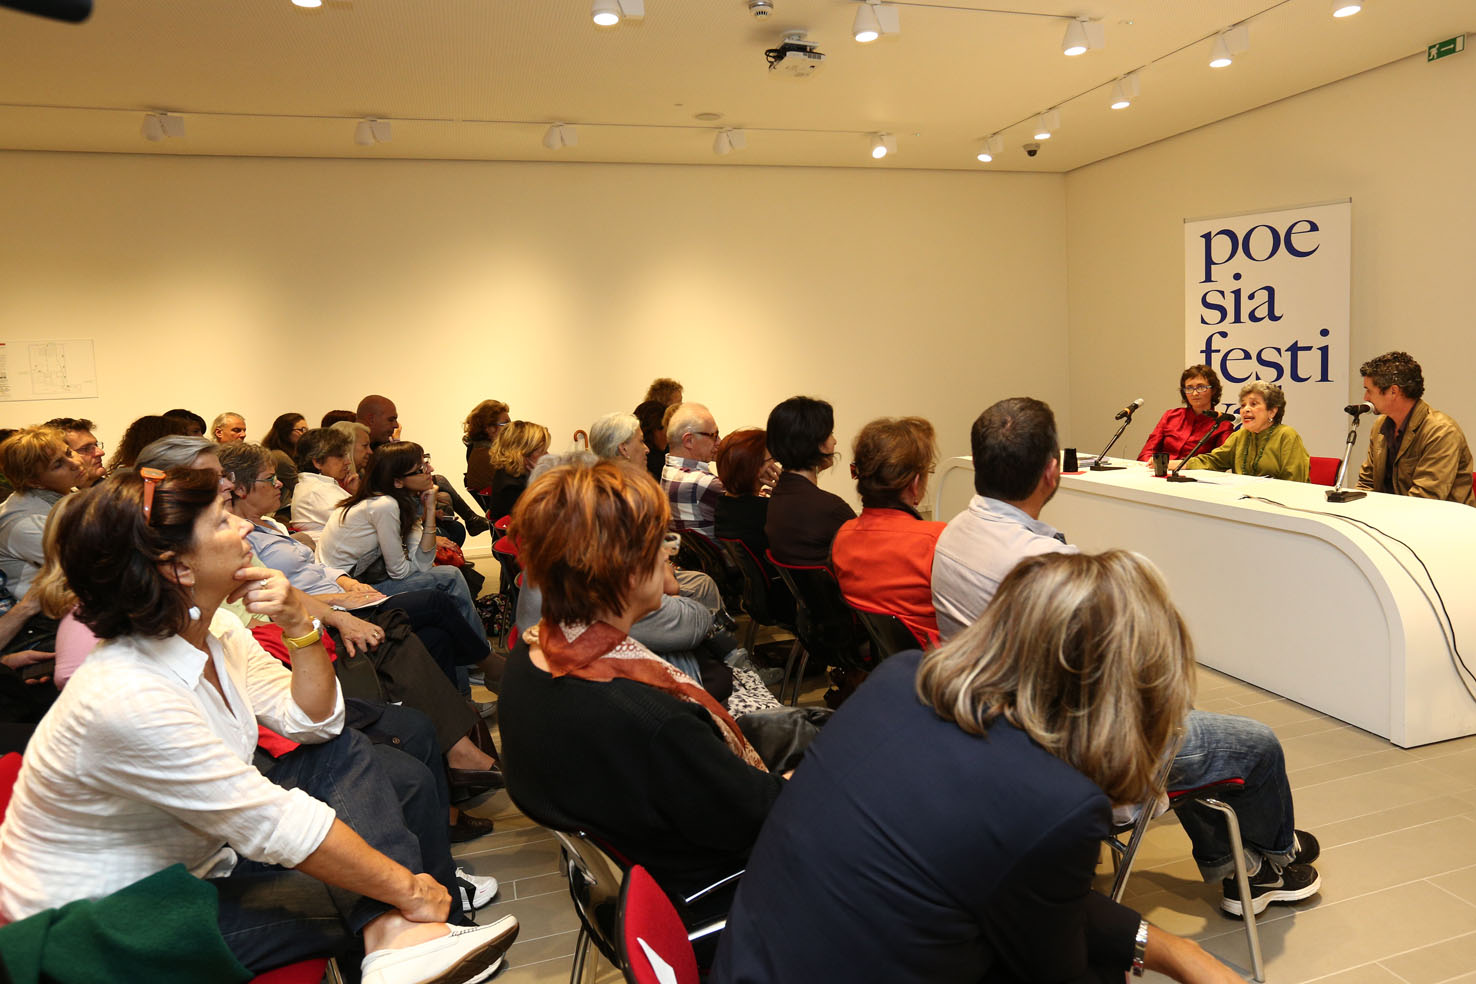 Claribel Alegrìa incontro con i poeti al MABIC di Maranello. ph. © Serena Campanini